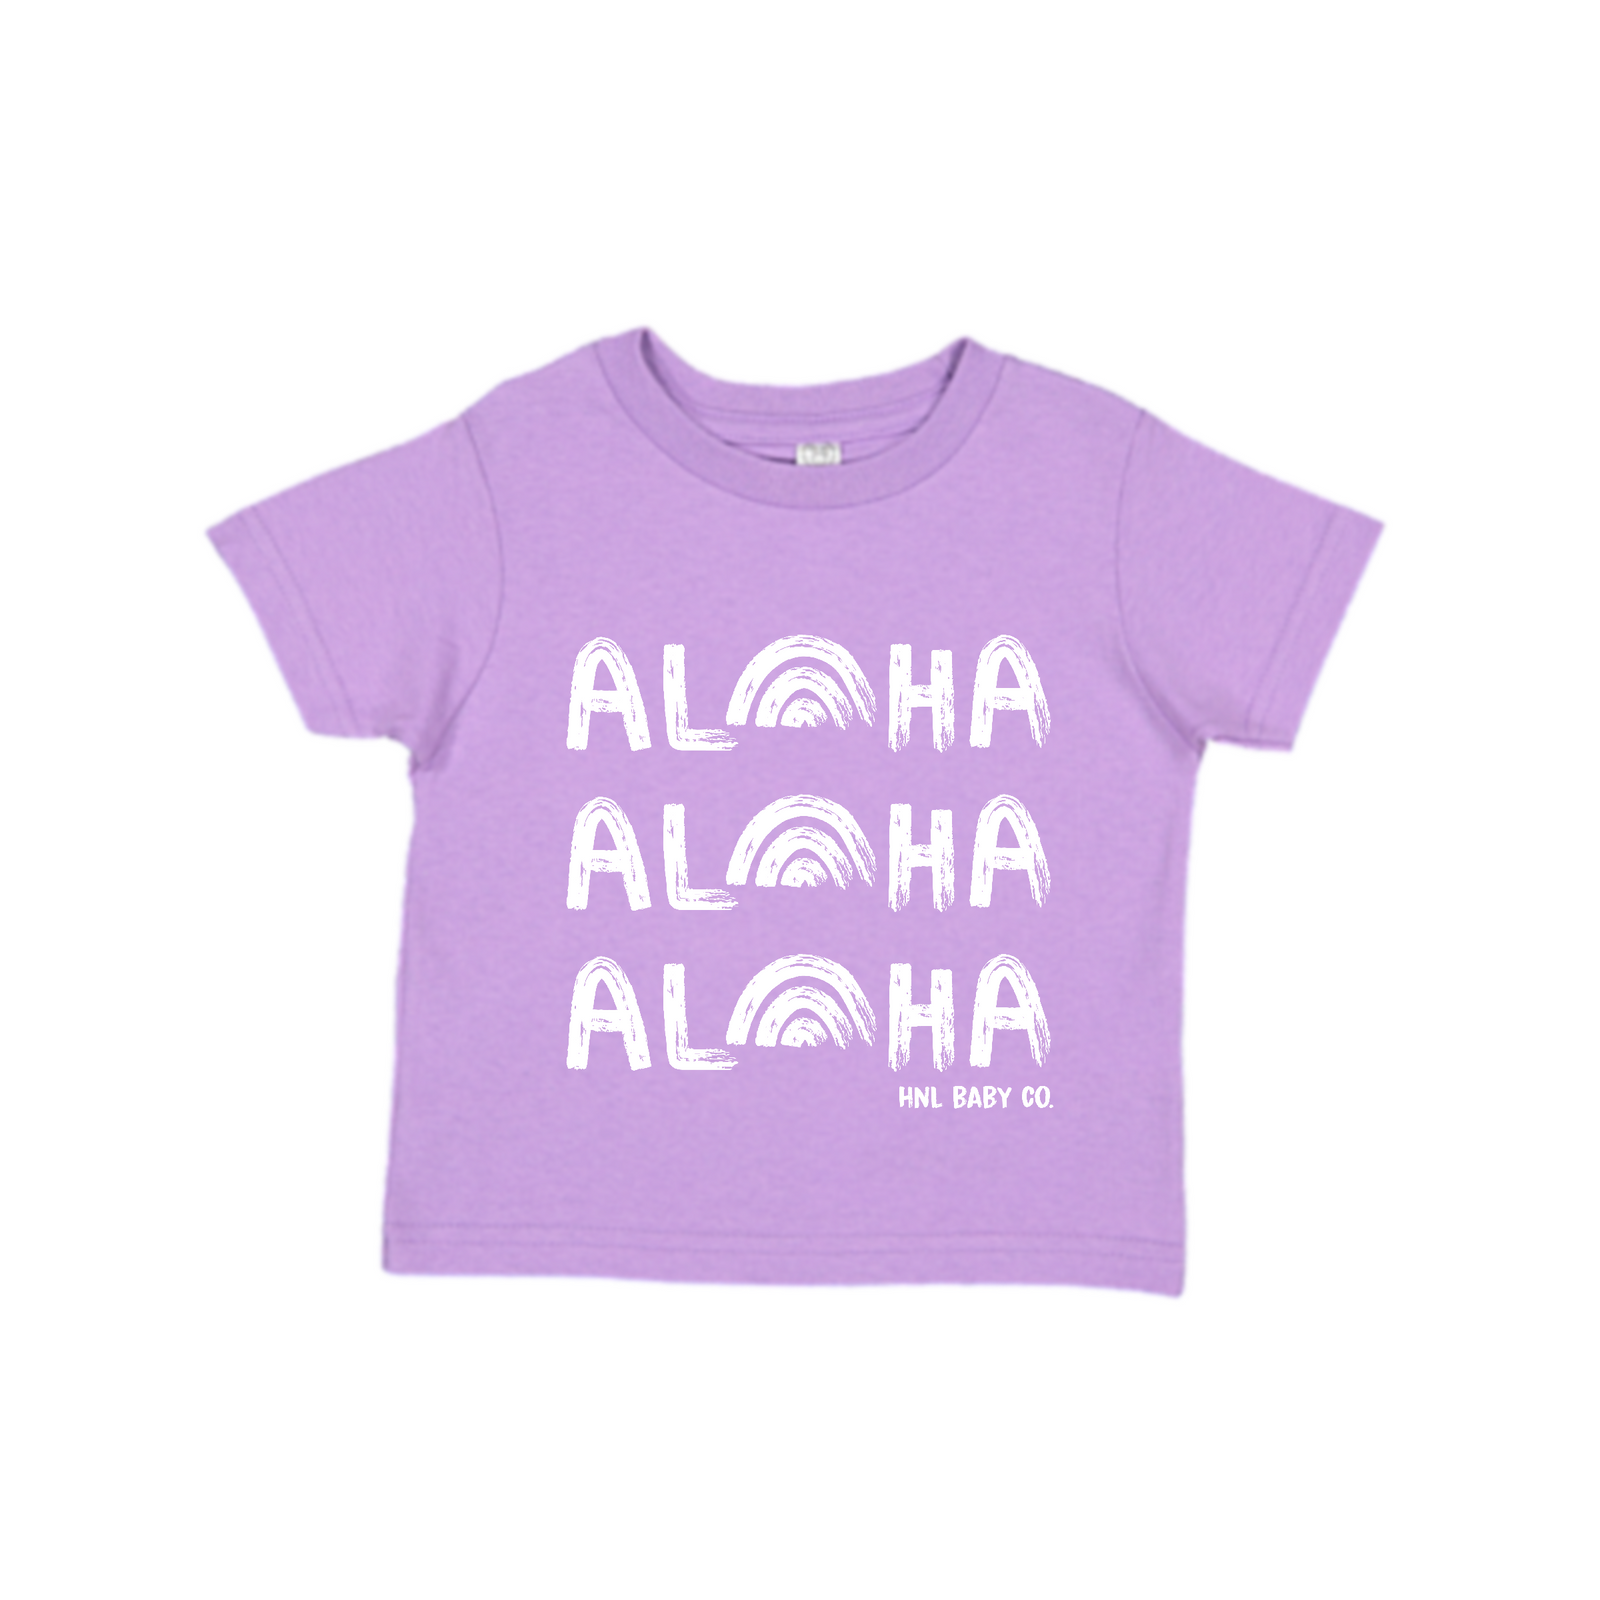 Pop-Up Mākeke - Honolulu Baby Co. - Aloha, Aloha, Aloha Keiki T-Shirt - Lavender